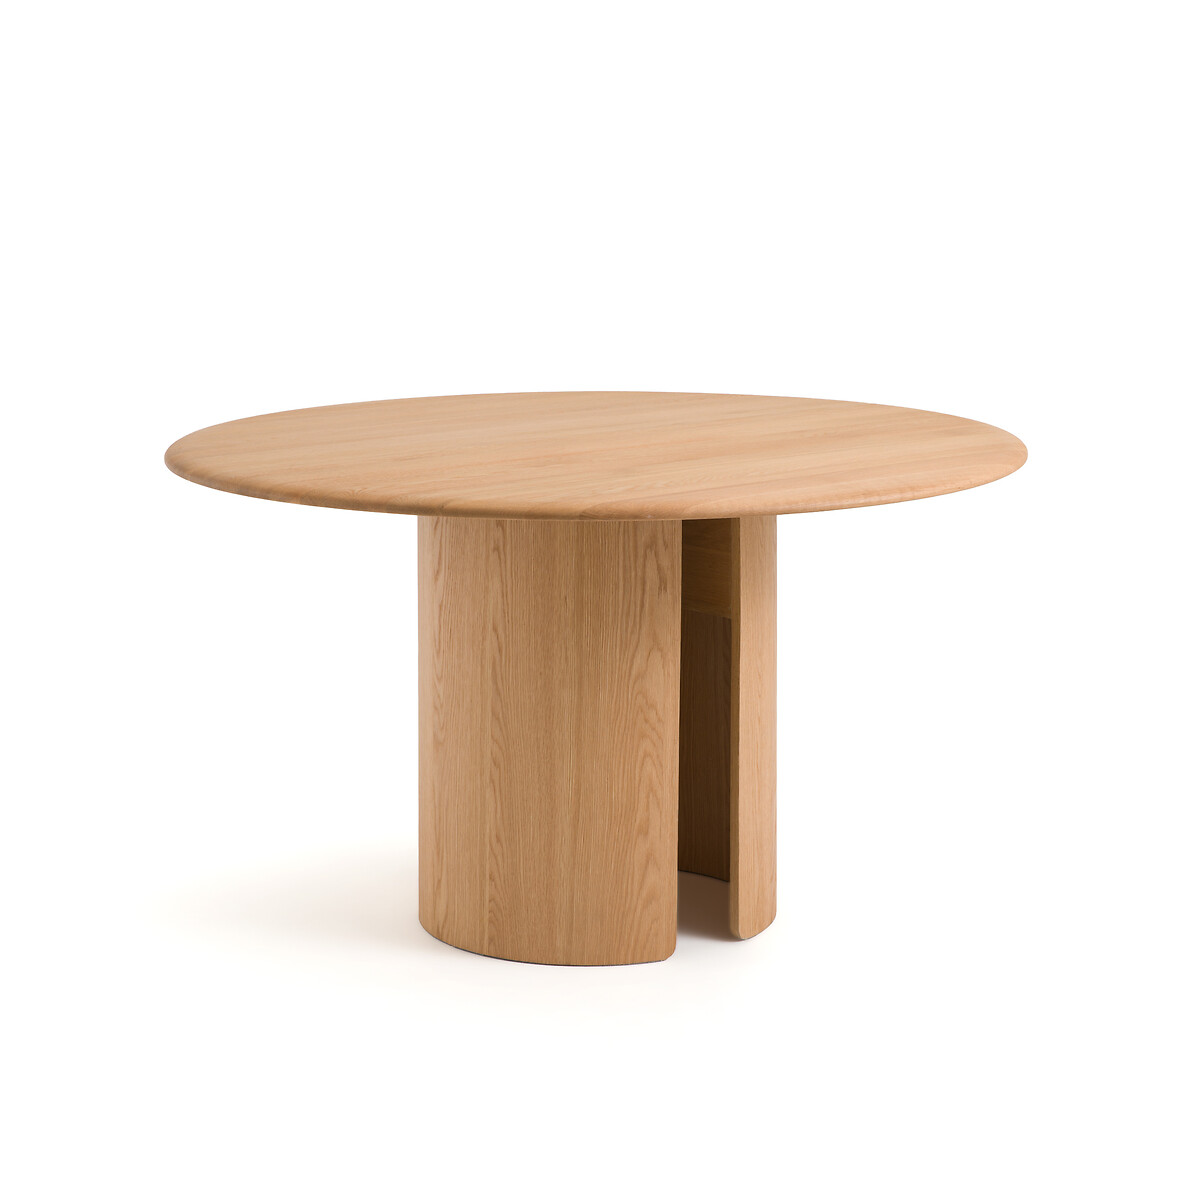 Стол круглый из дуба Sculpta на 6 персон каштановый стол из массива дуба со вставными досками thadora на 12 персон каштановый